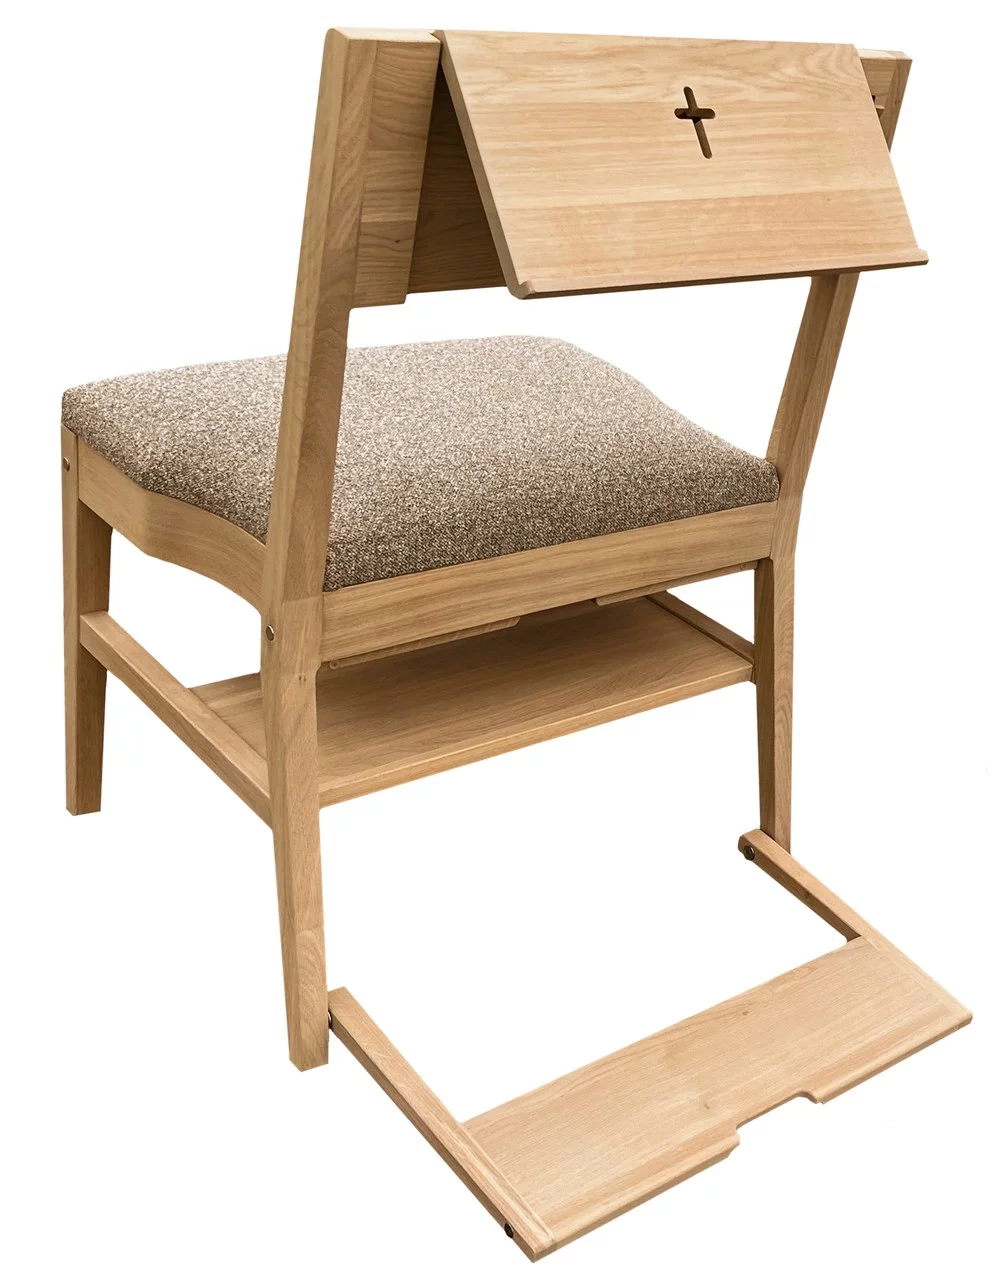 Krzesło kościelne dębowe ZOE z pełną gamą akcesoriów — mównica, hak, klęcznik, system łączenia, półka pod siedziskiem oraz tapicerka siedziska